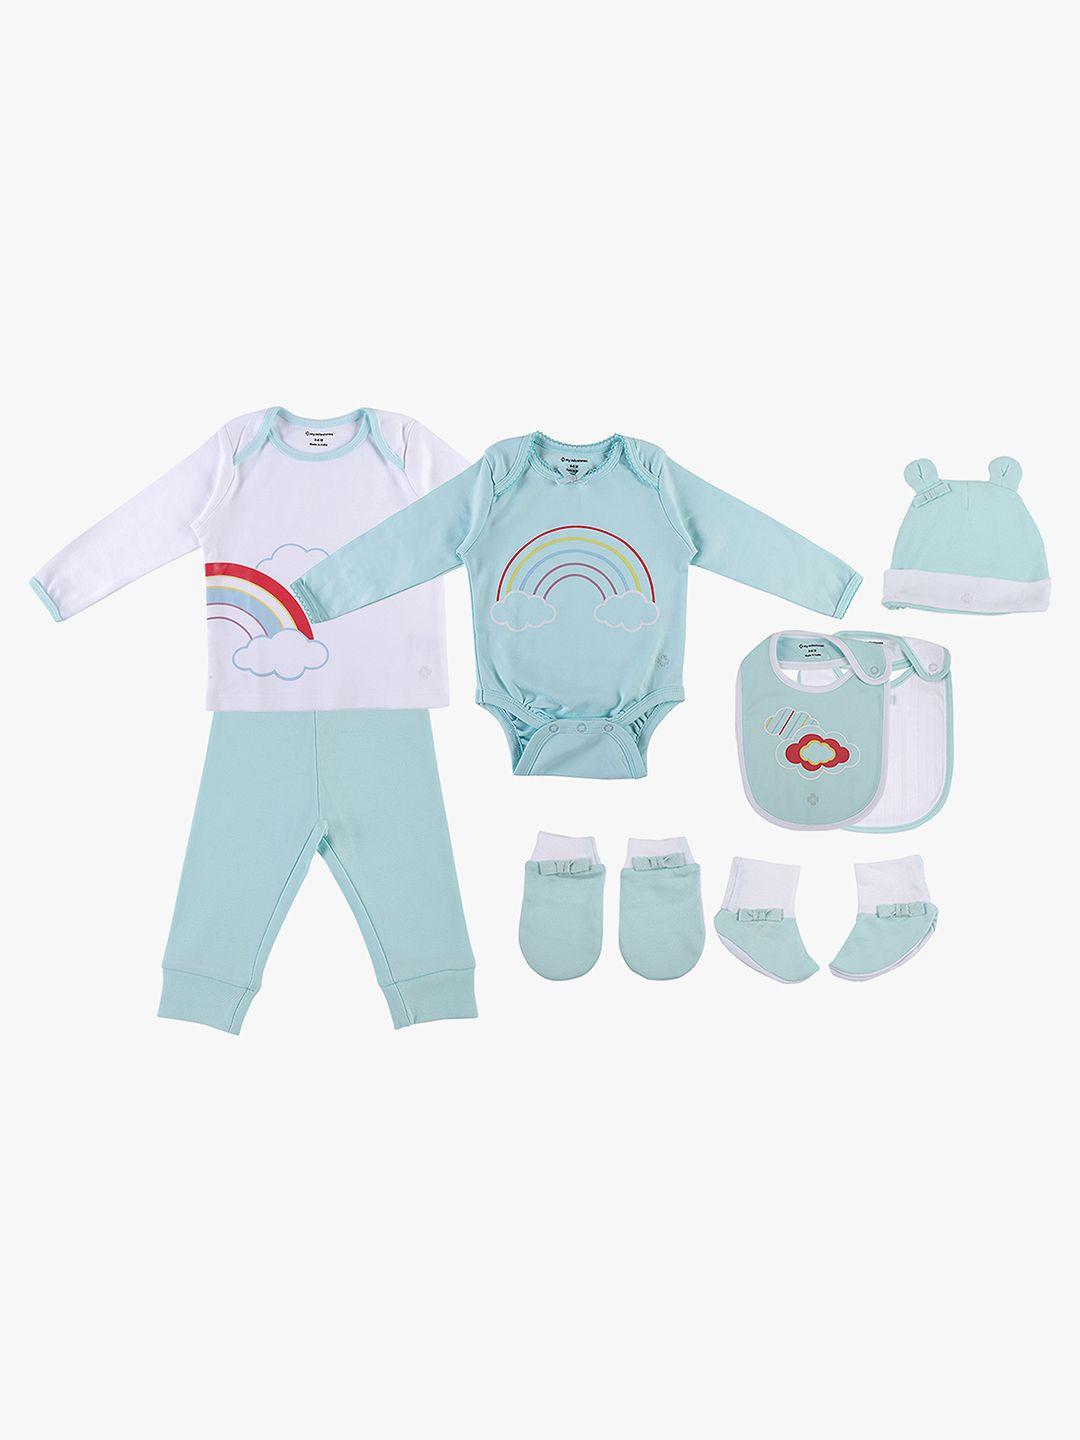 my-milestones-infant-set-of-8-clothing-gift-set